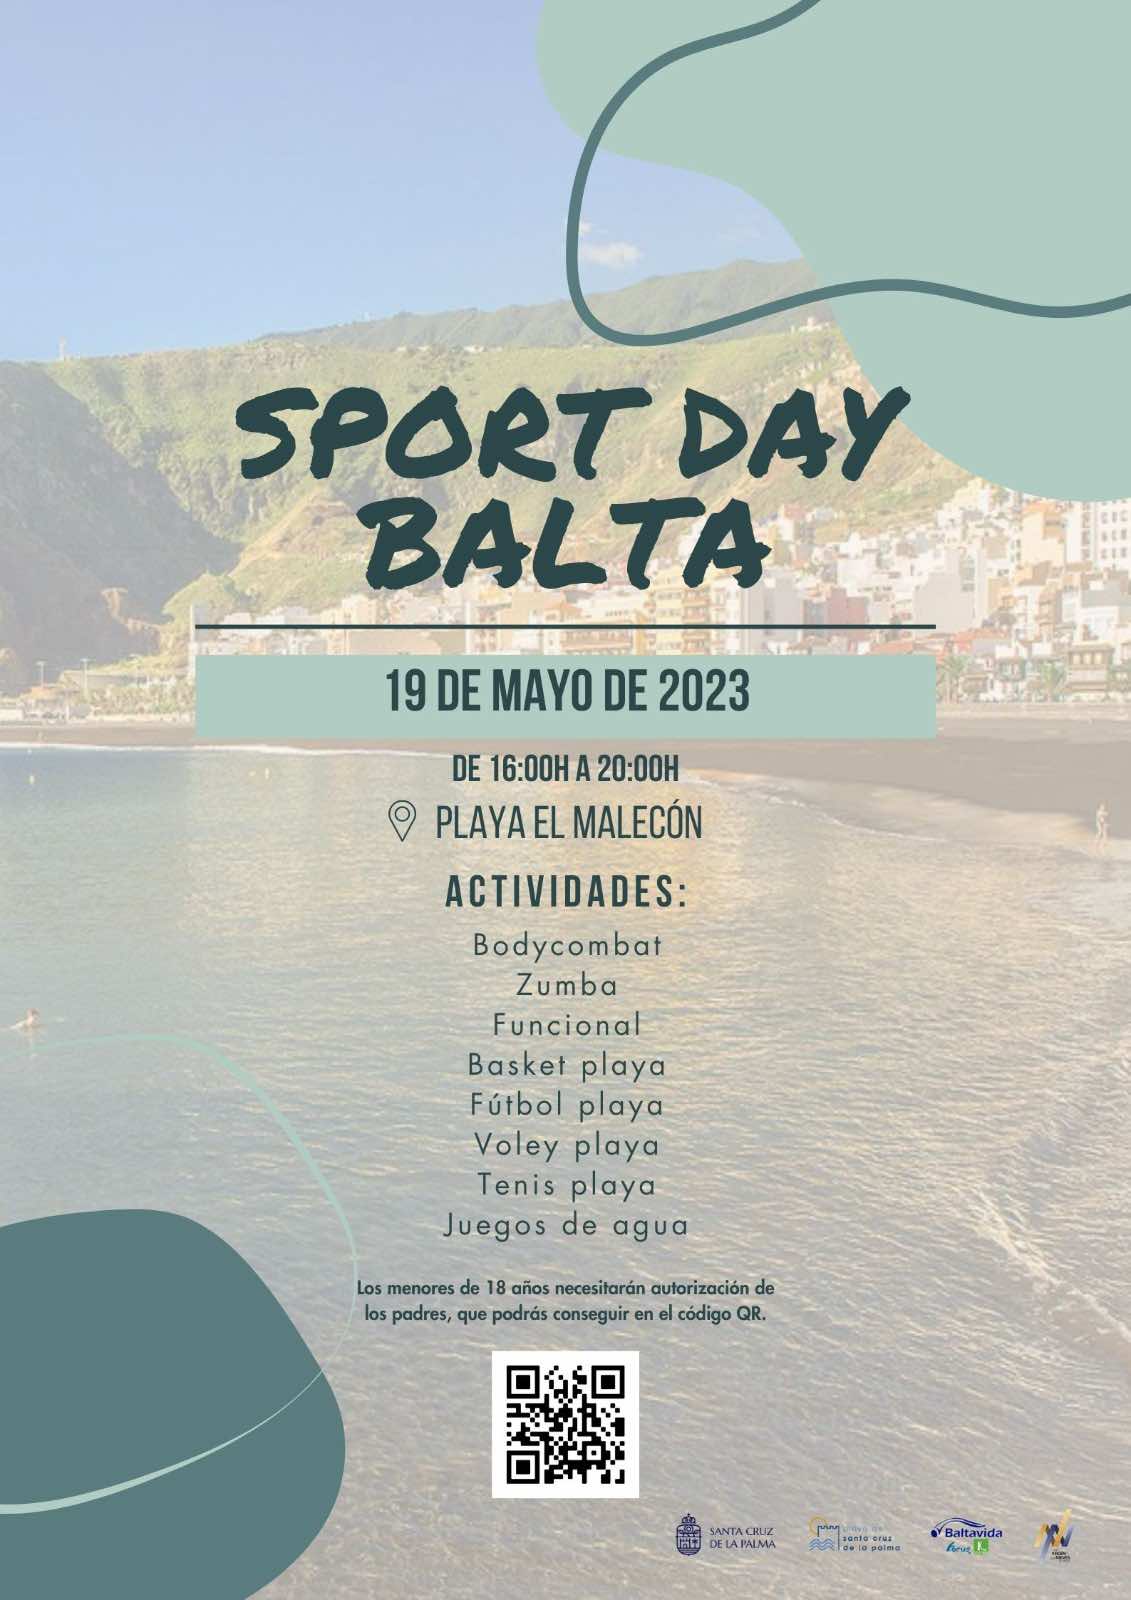 La playa de Santa Cruz de La Palma acoge mañana viernes una jornada de ocio activo con la jornada ‘Balta day Sport’